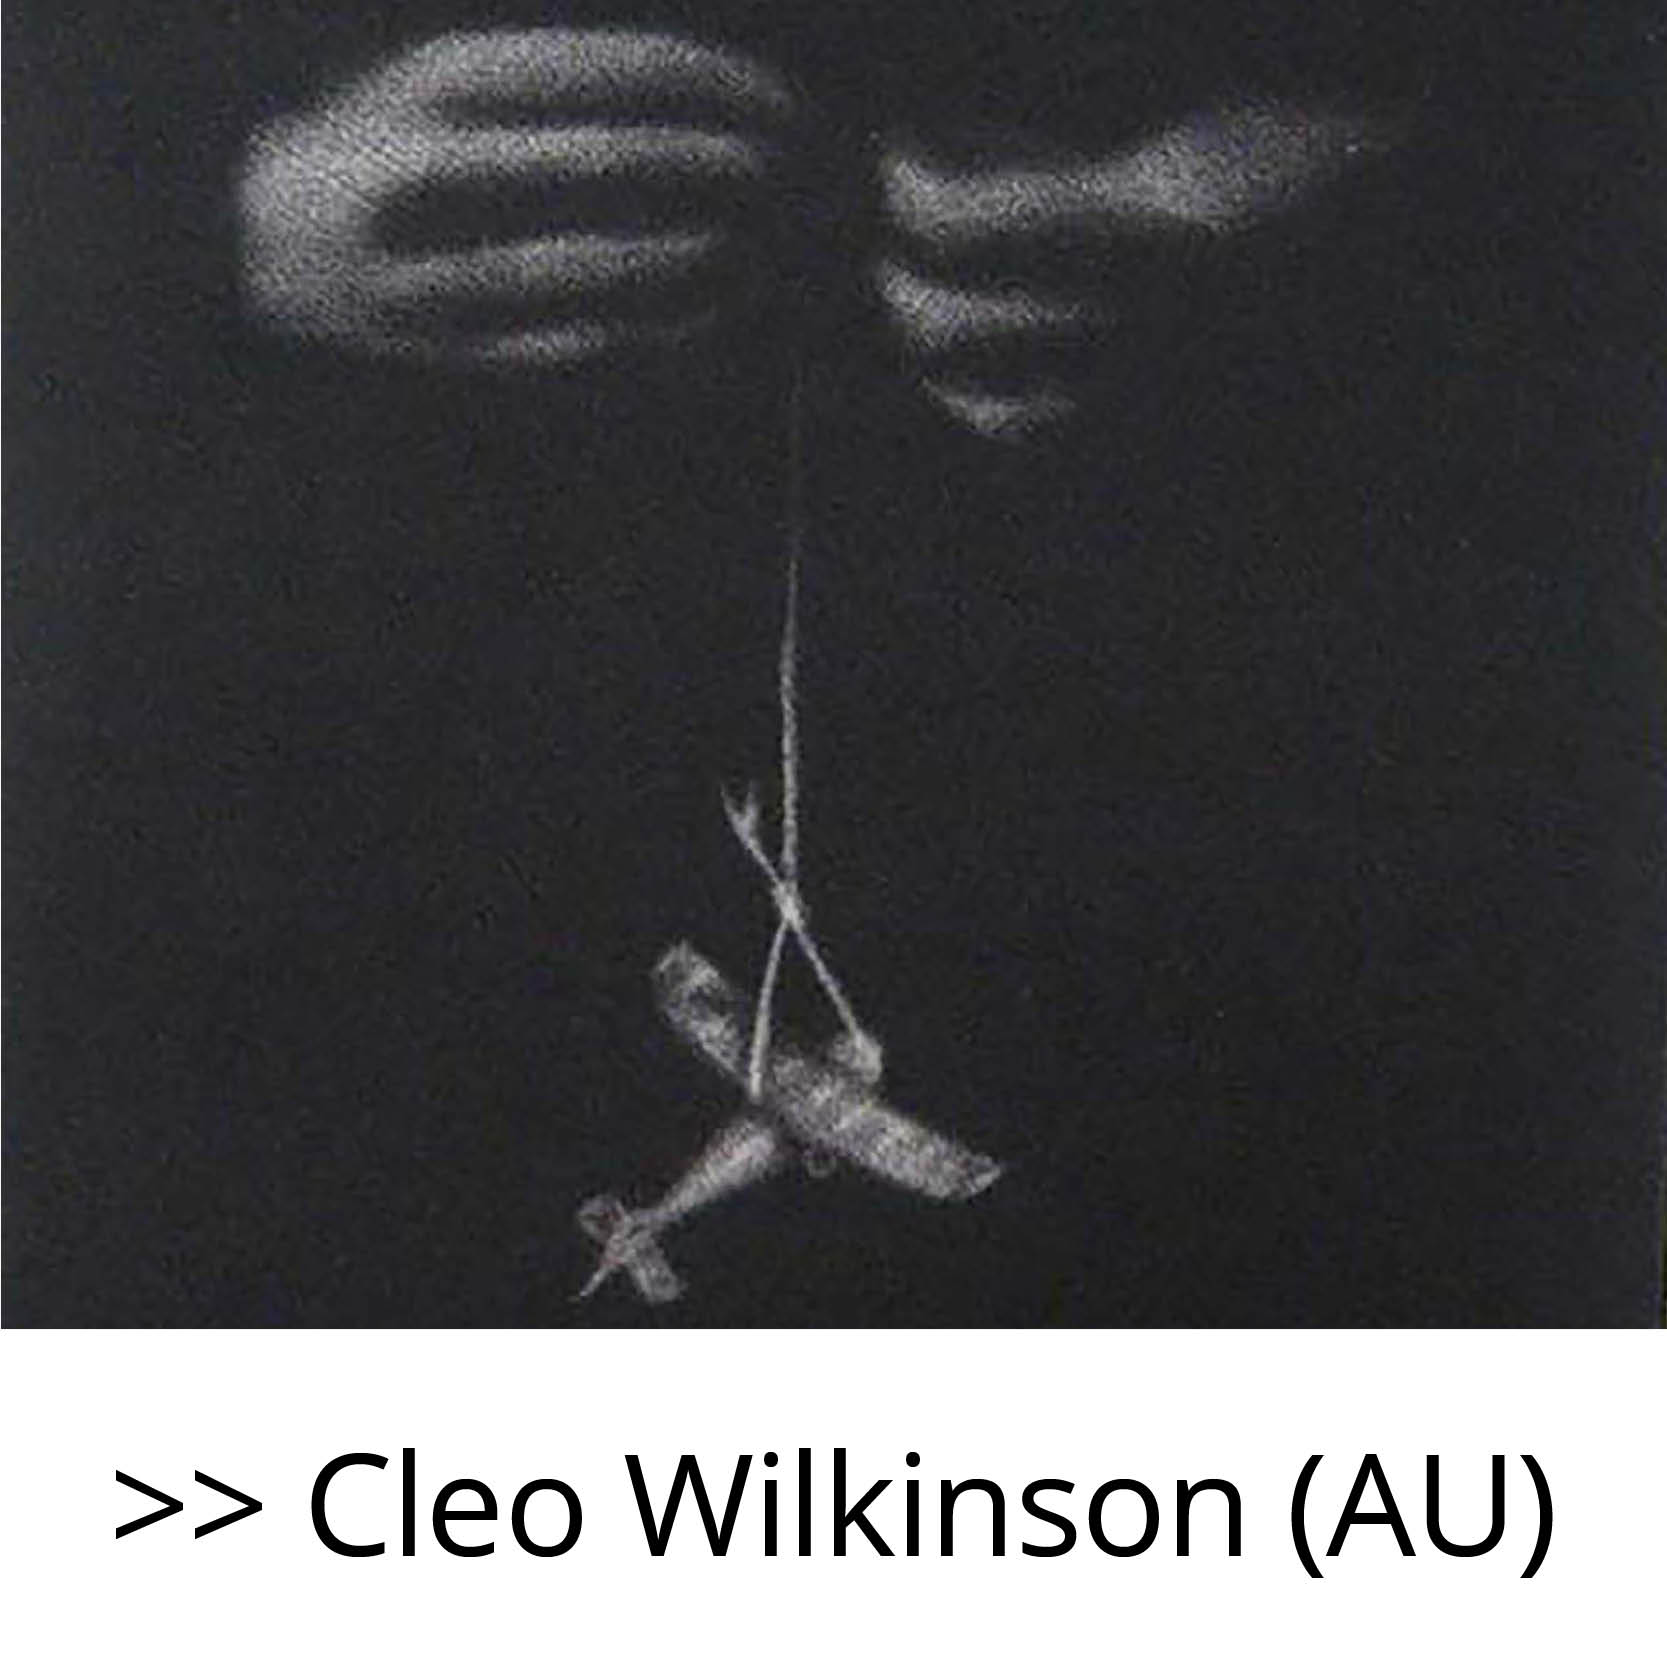 Cleo_Wilkinson_(AU)